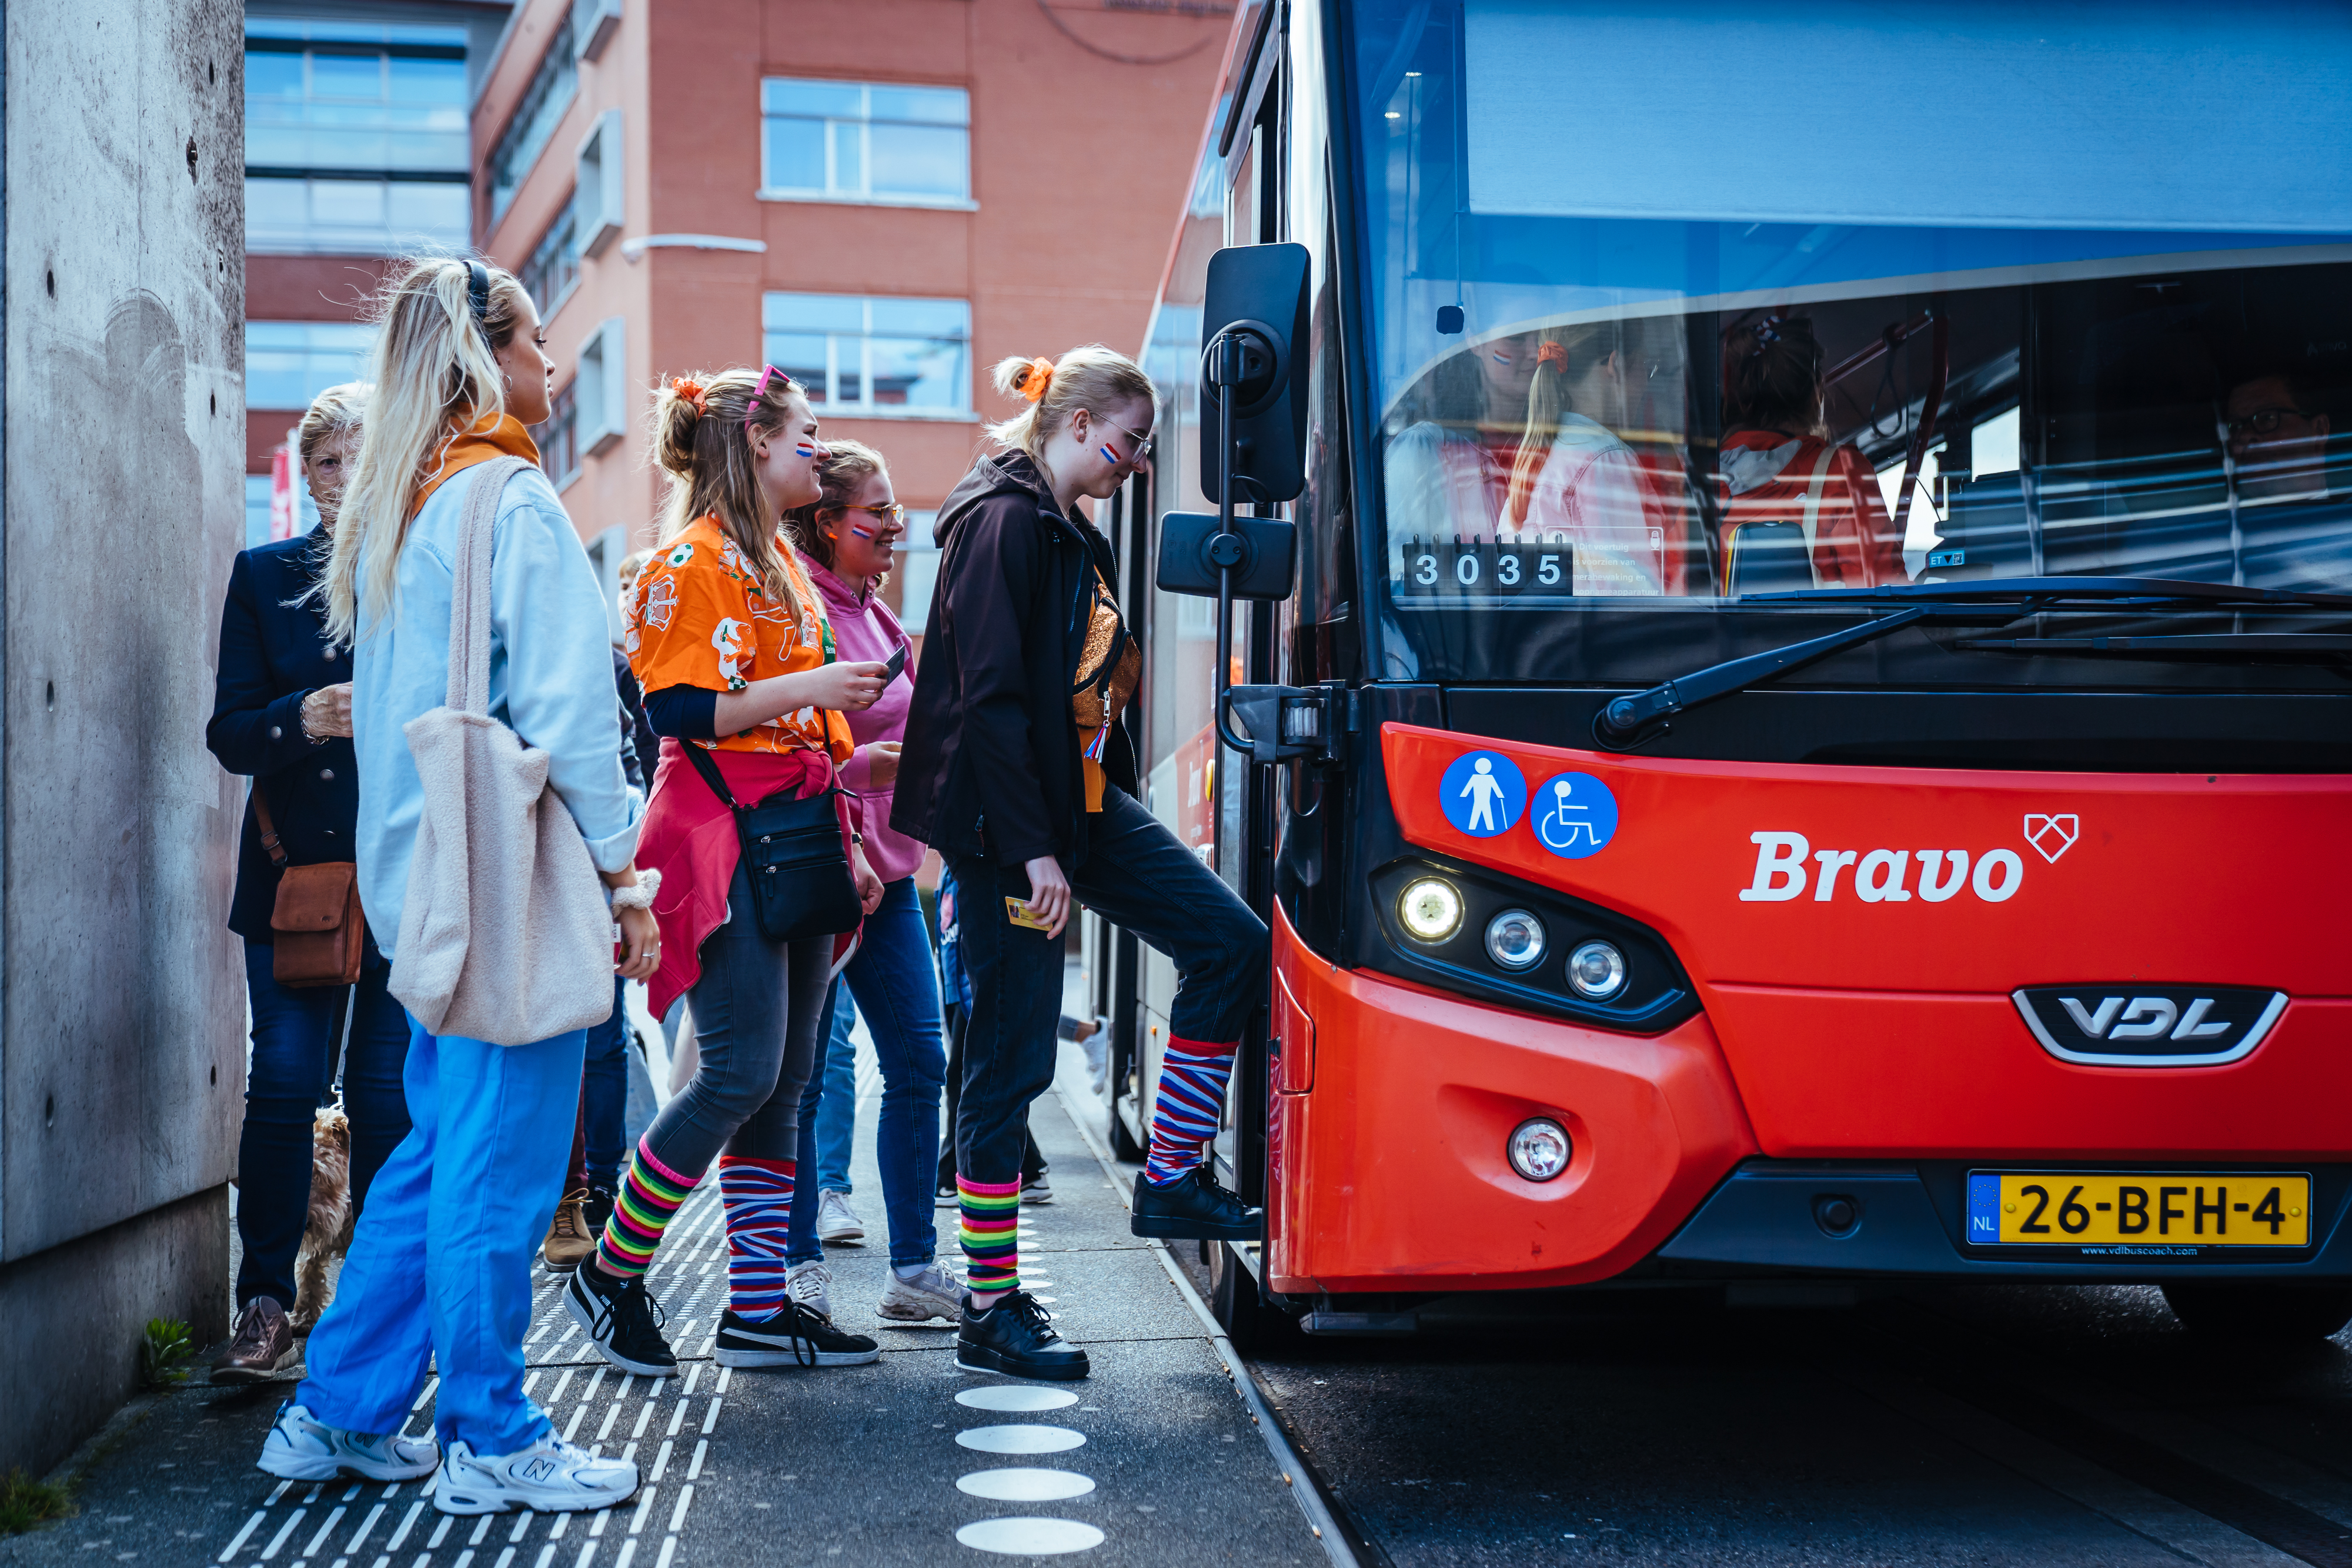 Vrolijk uitgedoste festivalgangers stappen in Bravo-bus tijdens carnaval.